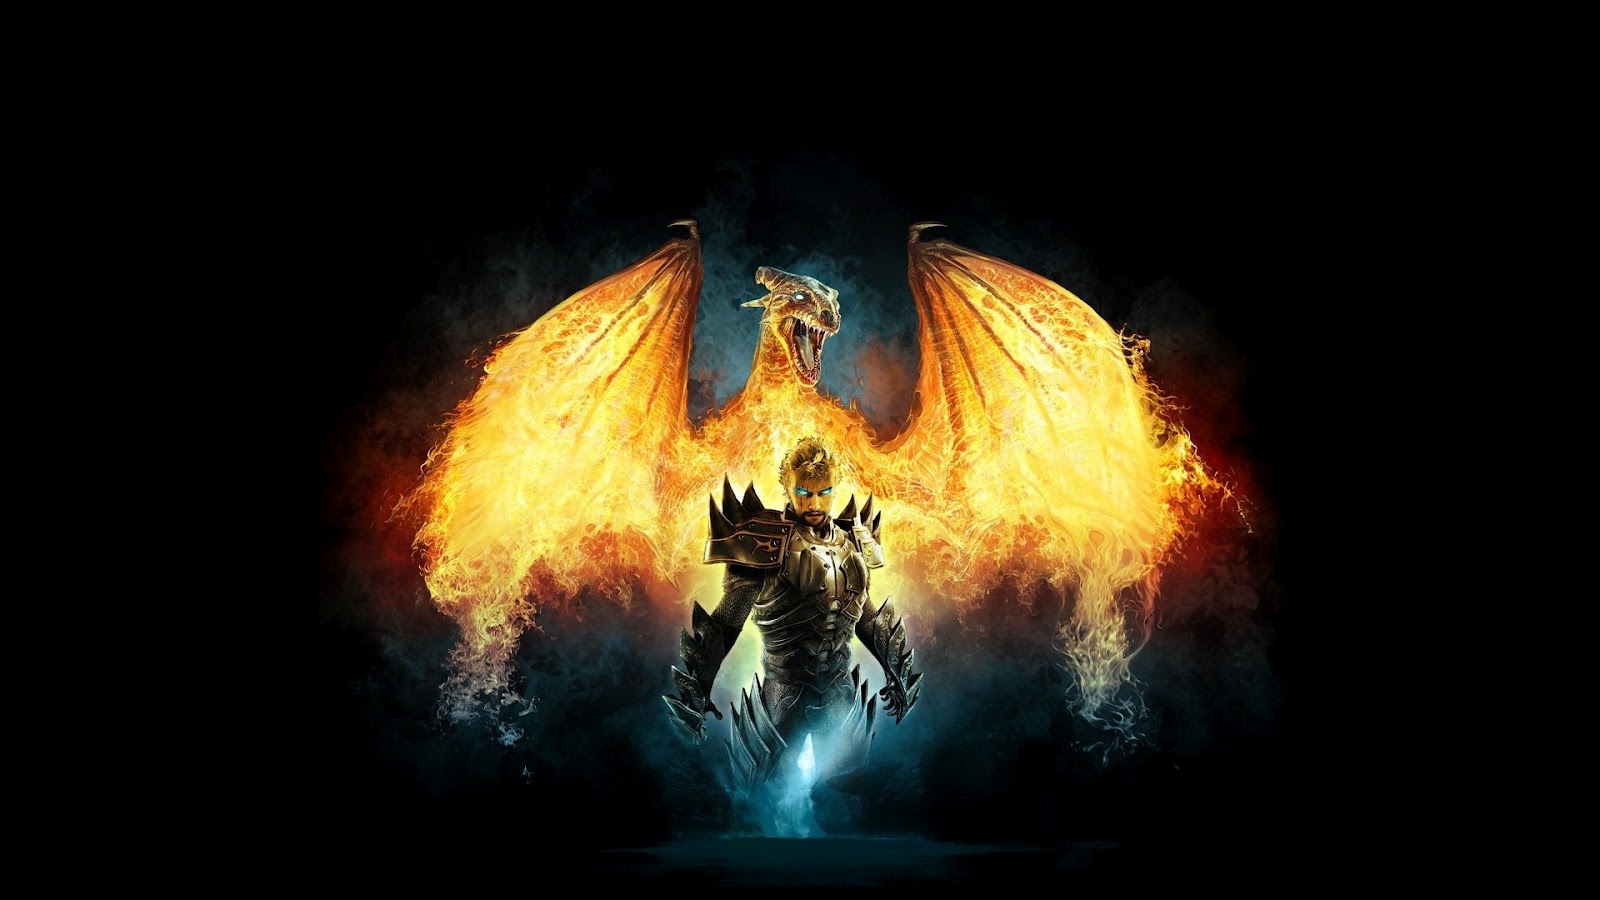 Dragon On Fire Full HD Desktop Wallpaper 1080p